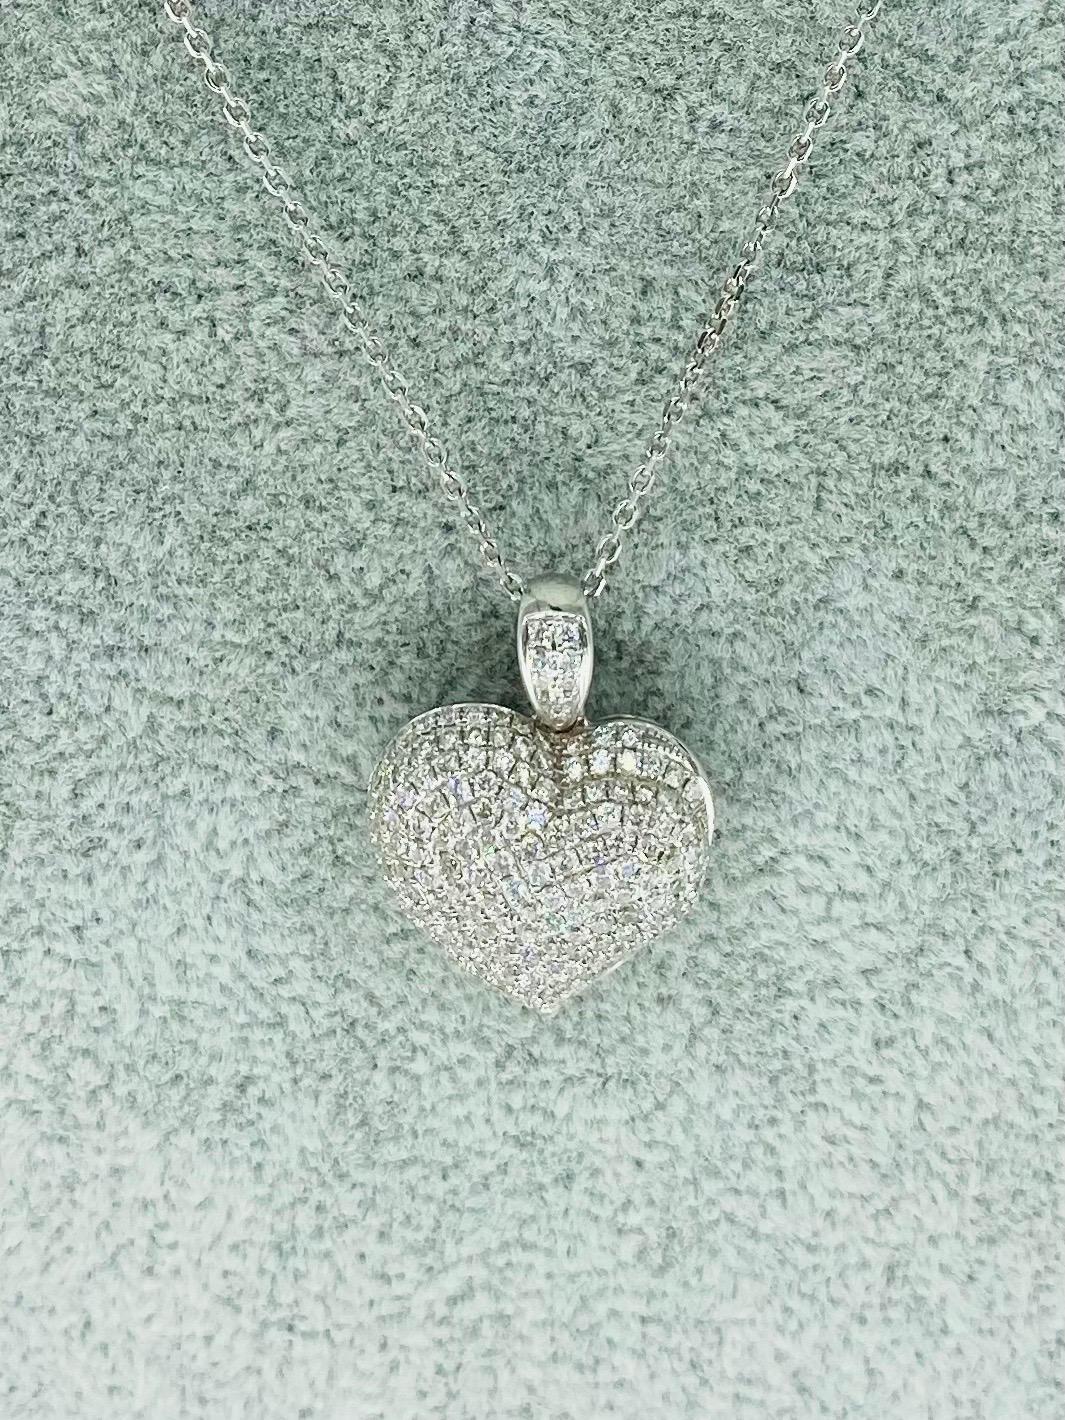 7.50 Karat Diamanten 3D Herz Love Anhänger Halskette
Der Anhänger ist aus massivem 18-karätigem Weißgold gefertigt und besteht aus ca. 7,50 Karat hochreinen weißen Diamanten. Der Anhänger misst 24 mm x 18 mm und wiegt 7,6 Gramm Gold. Die Halskette,